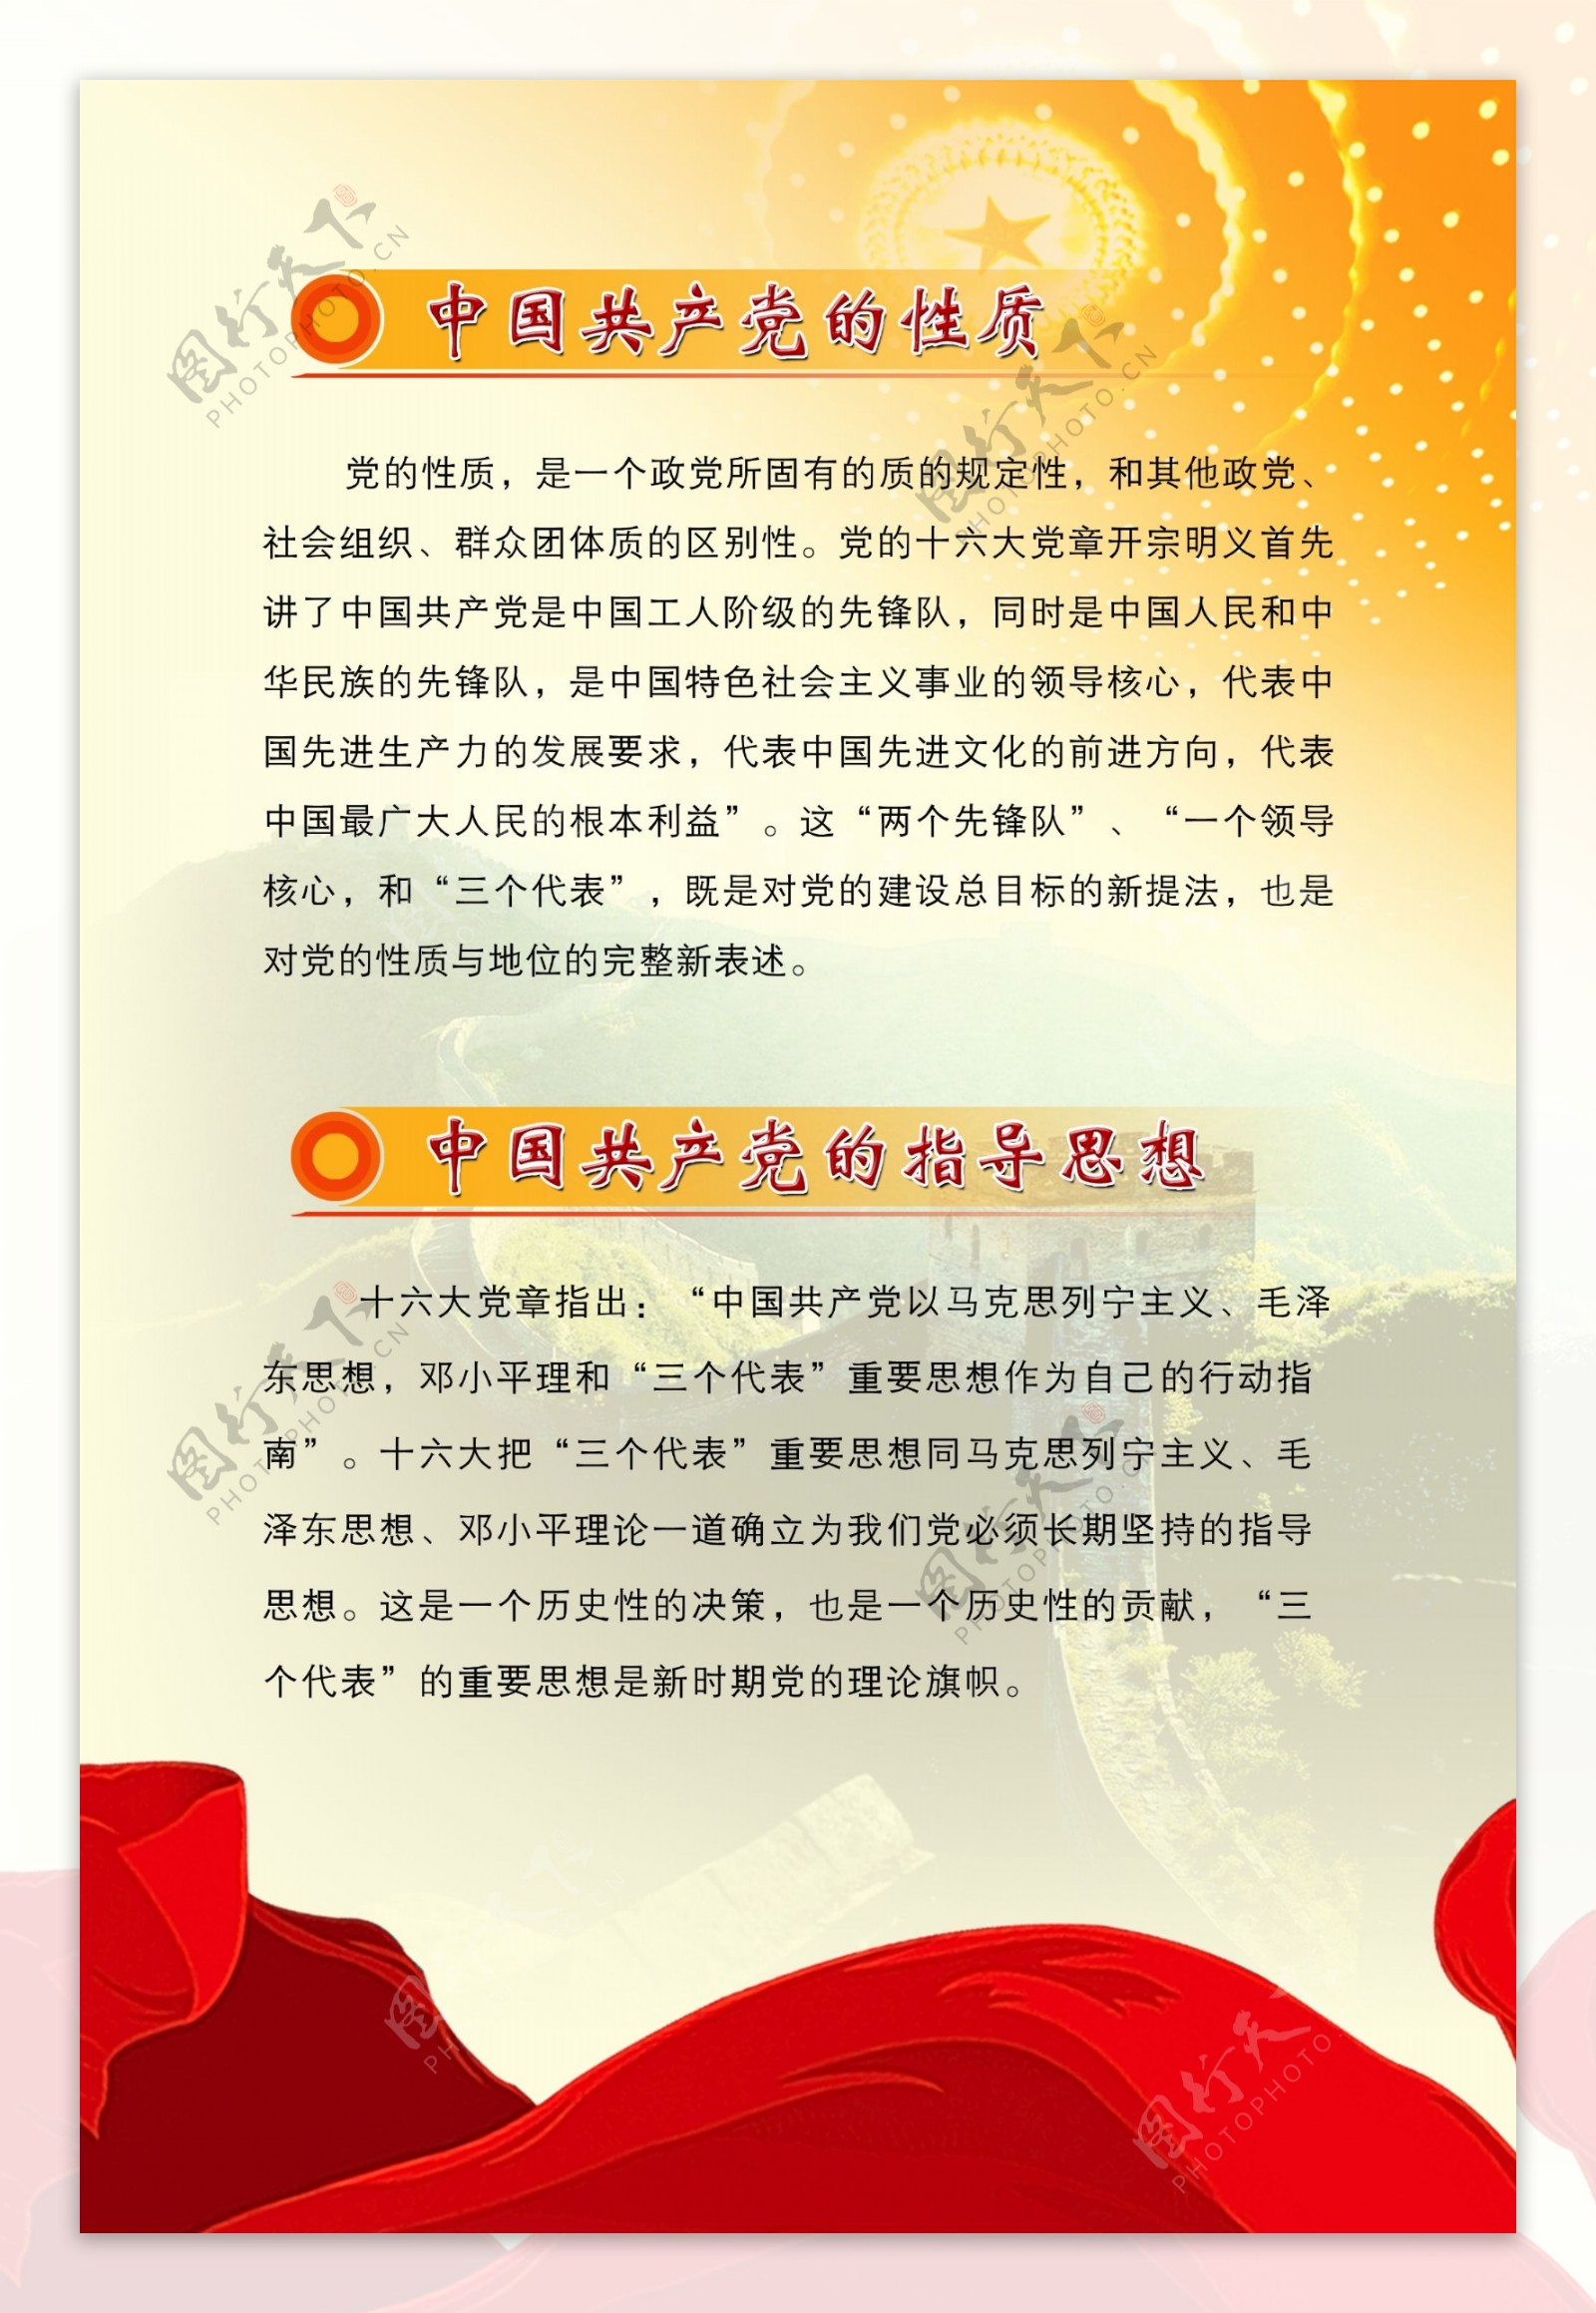 竖版党建宣传图板中国共产党的性质